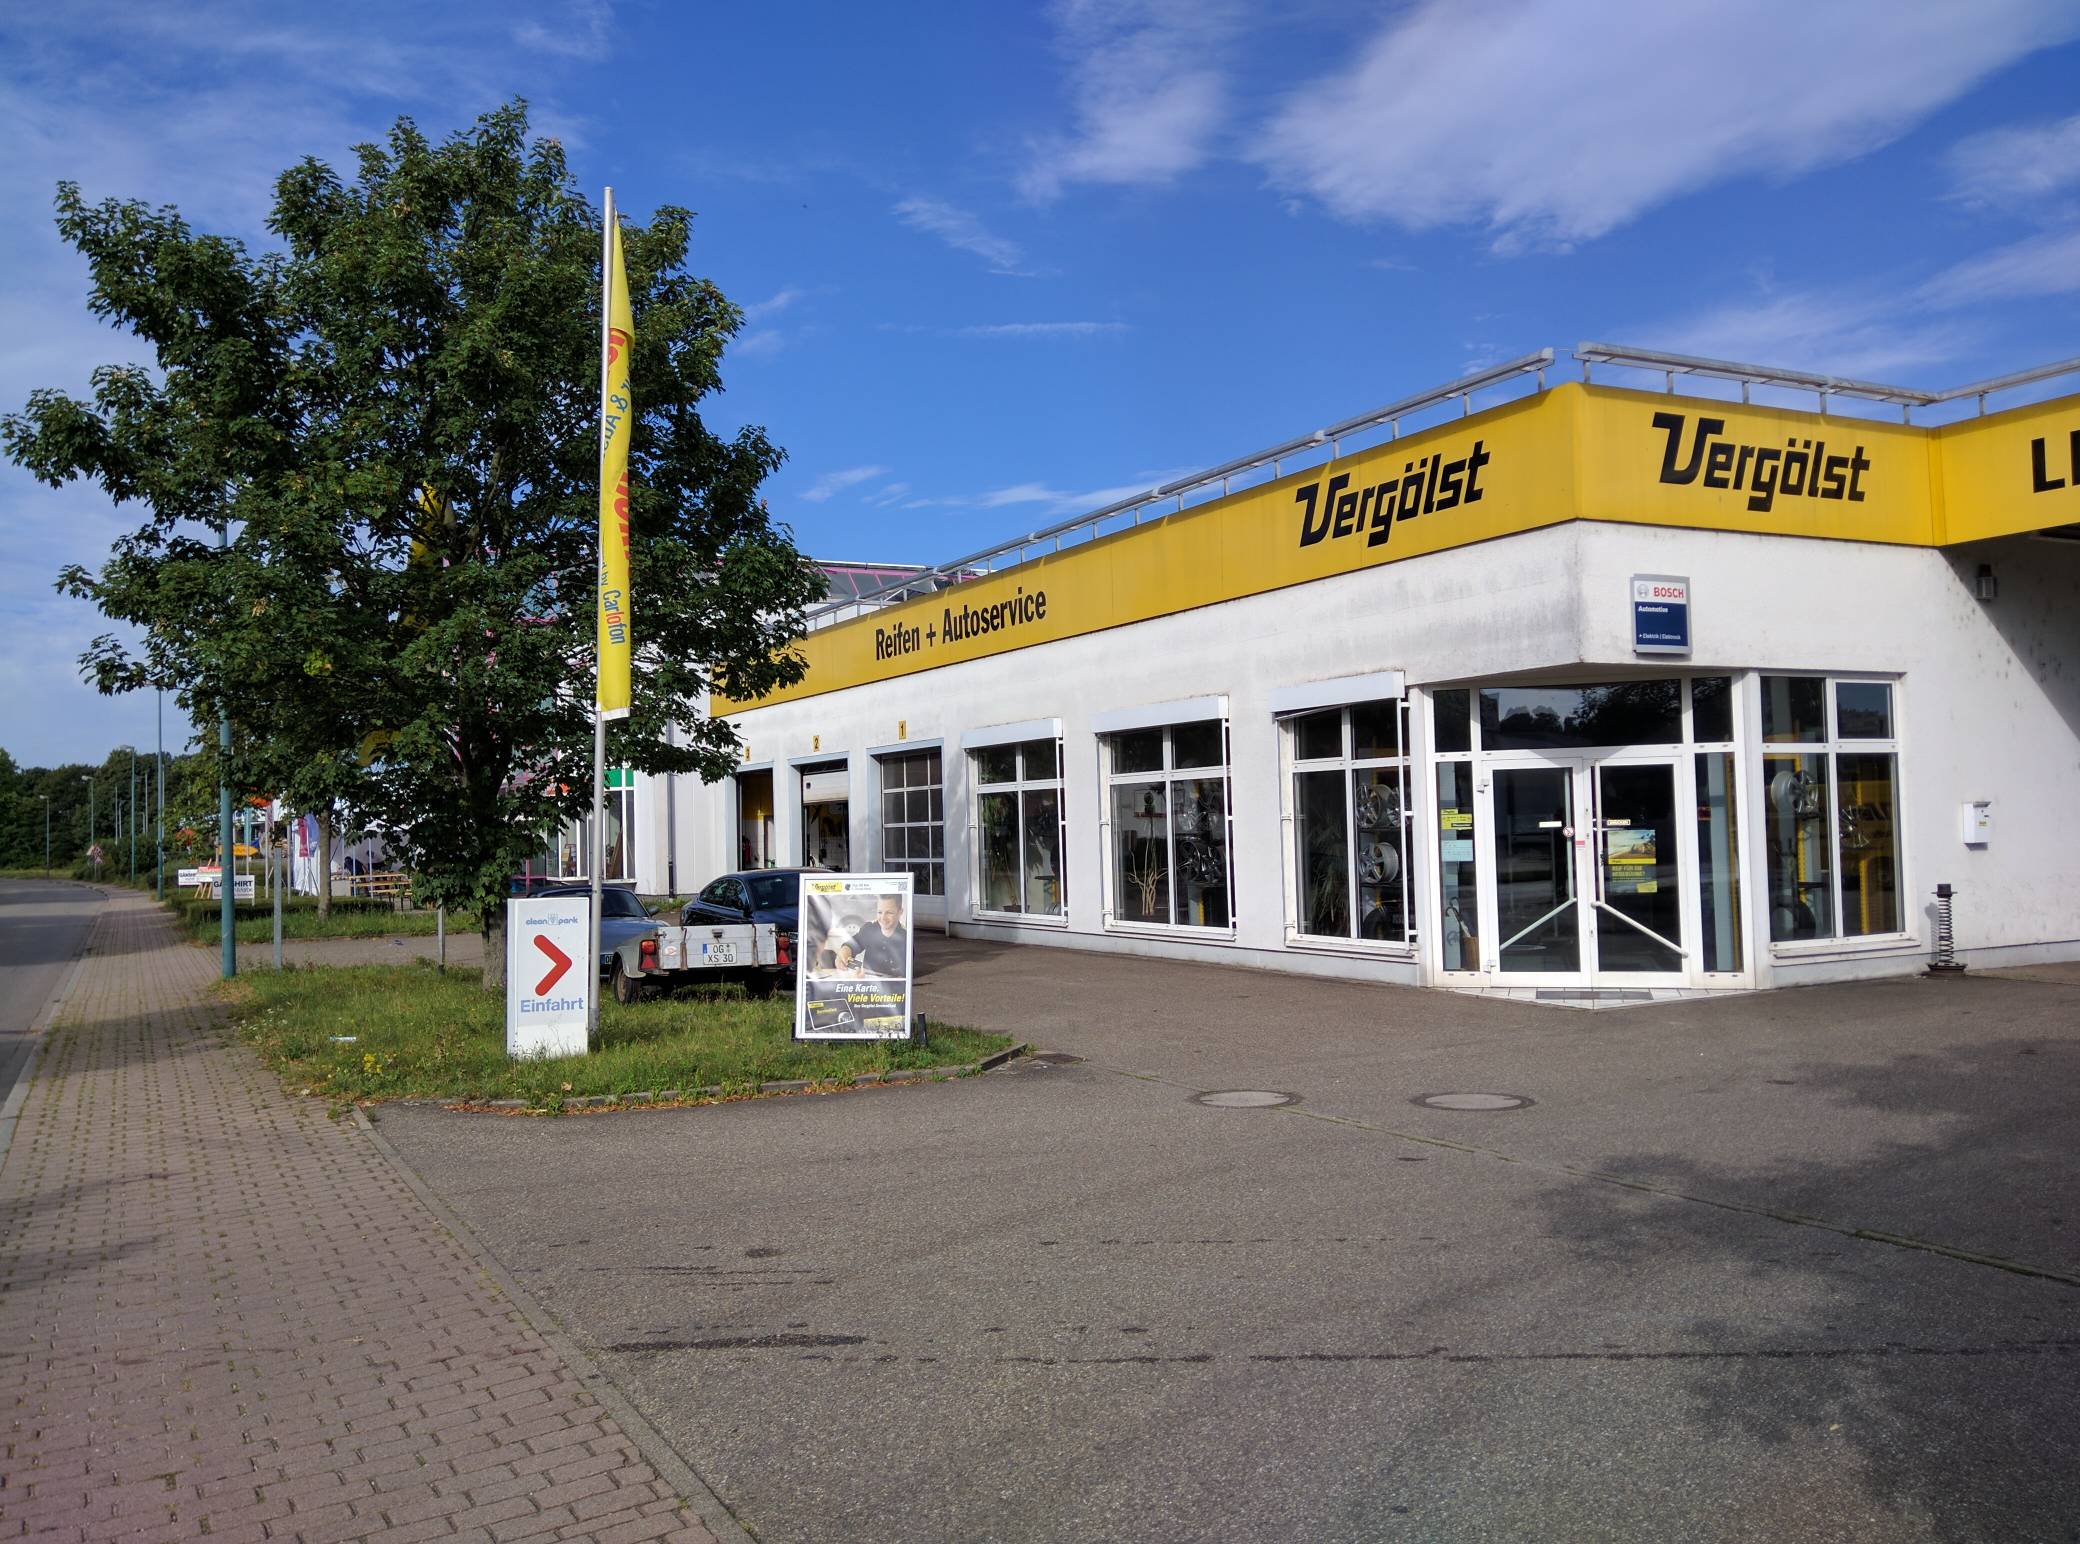 Bild 3 Vergölst GmbH Reifen + Autoservice in Lahr